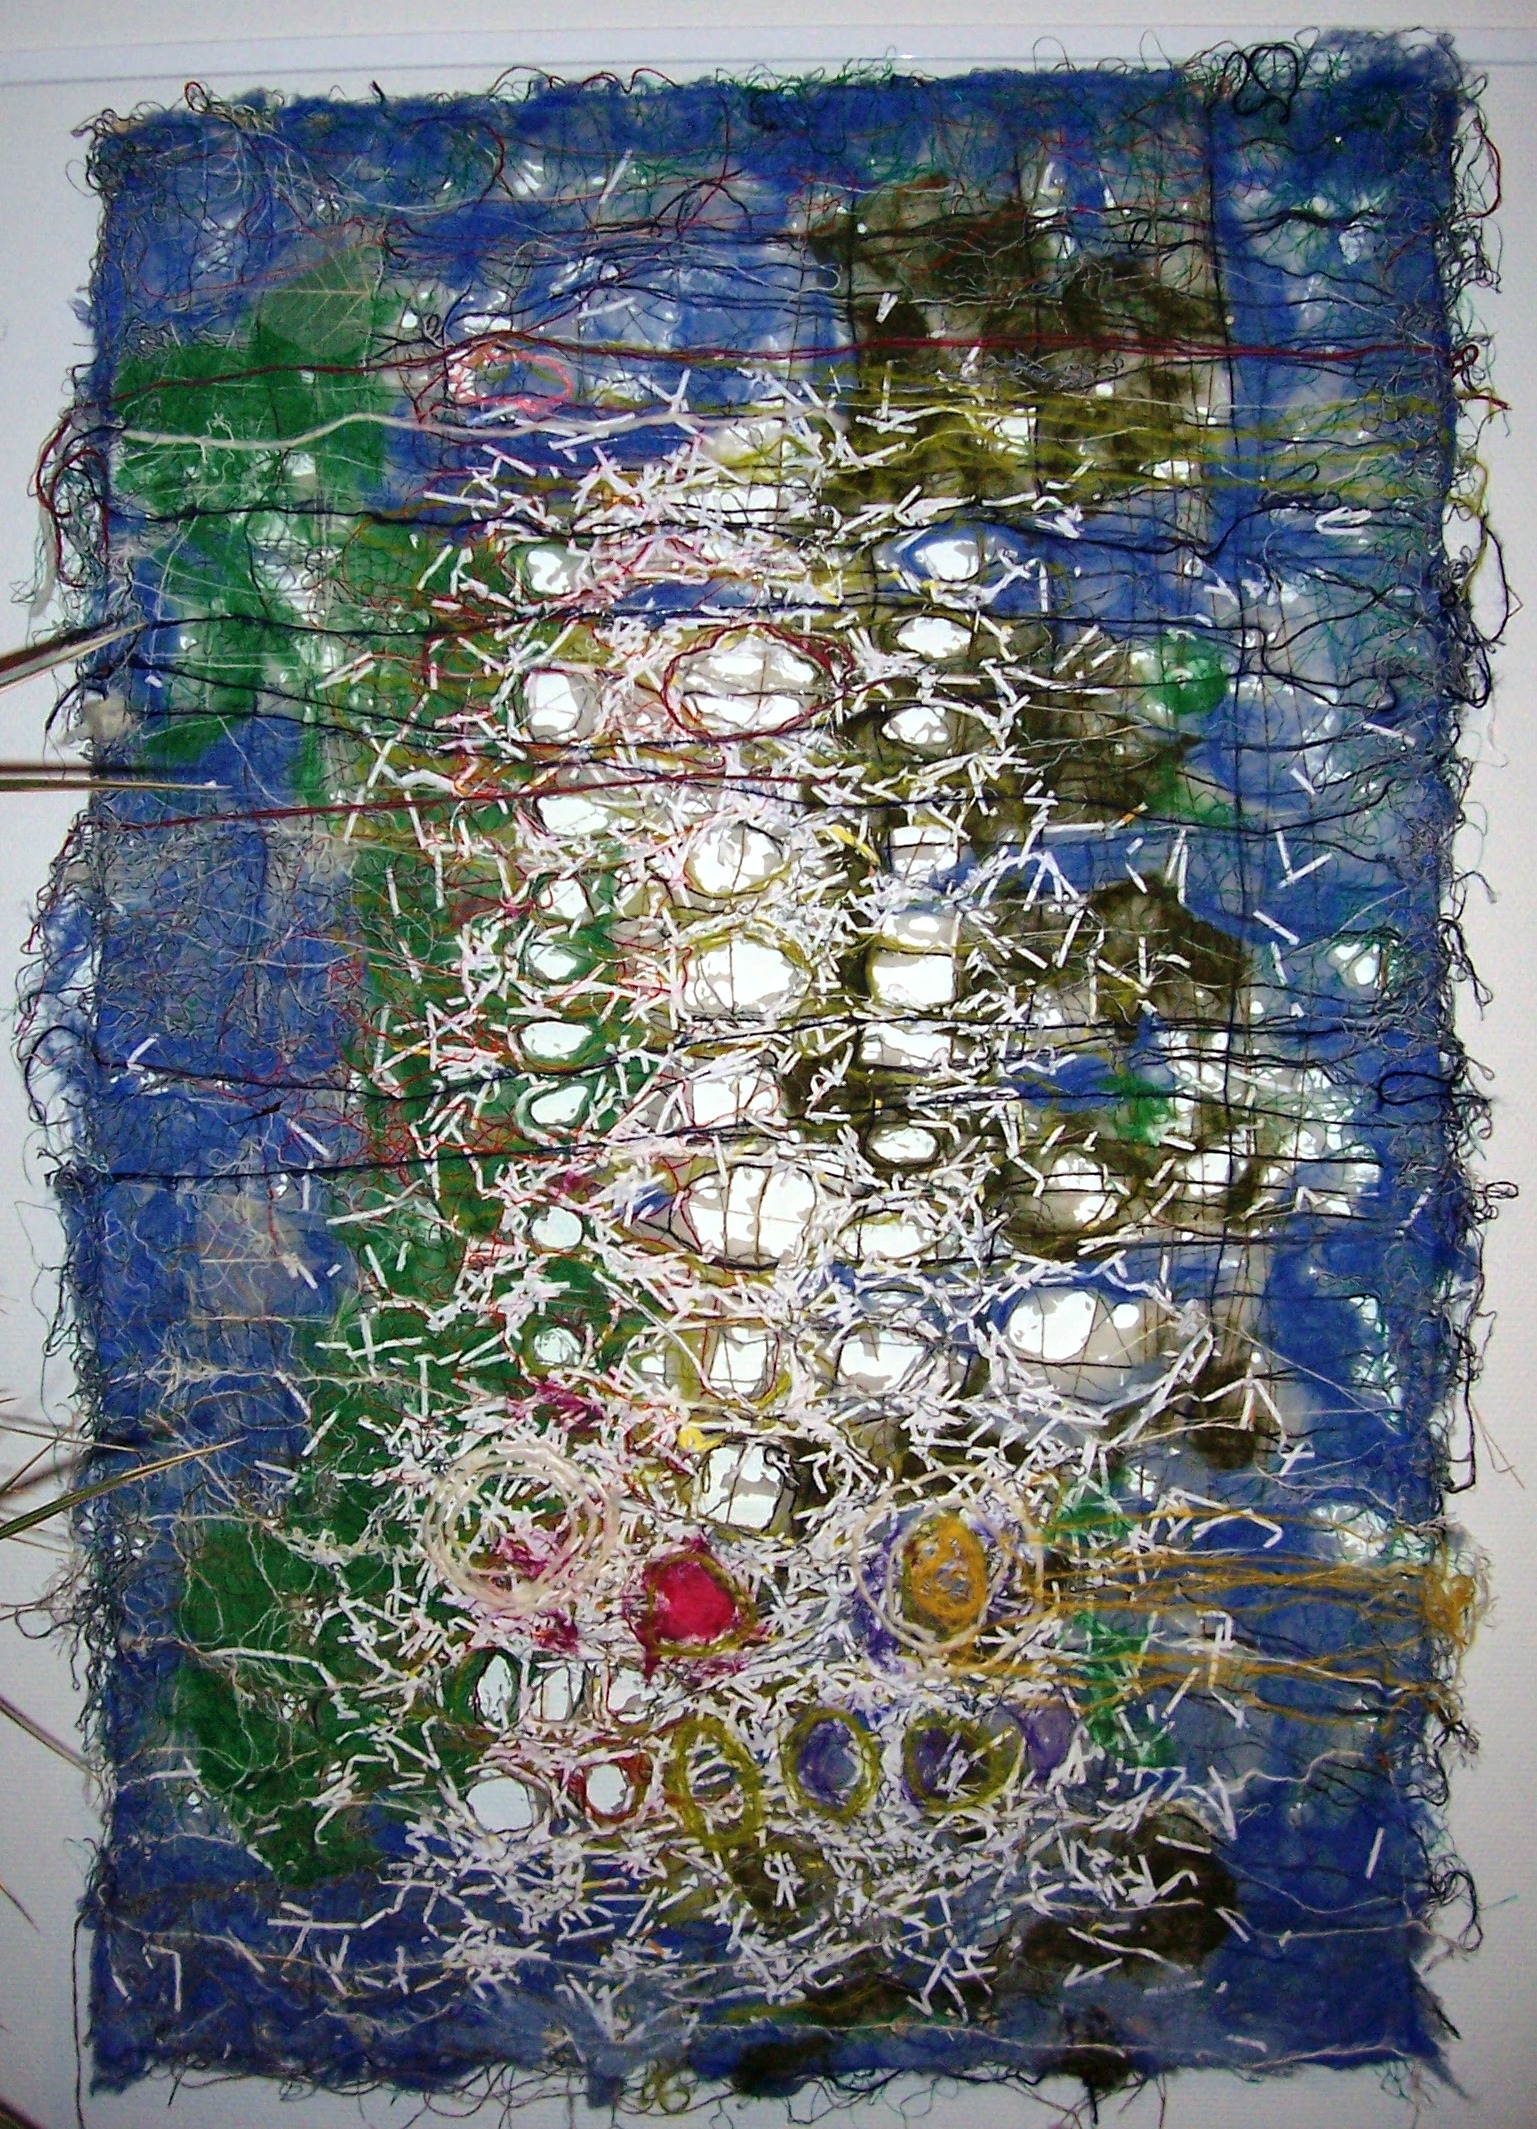 Tekstil collage